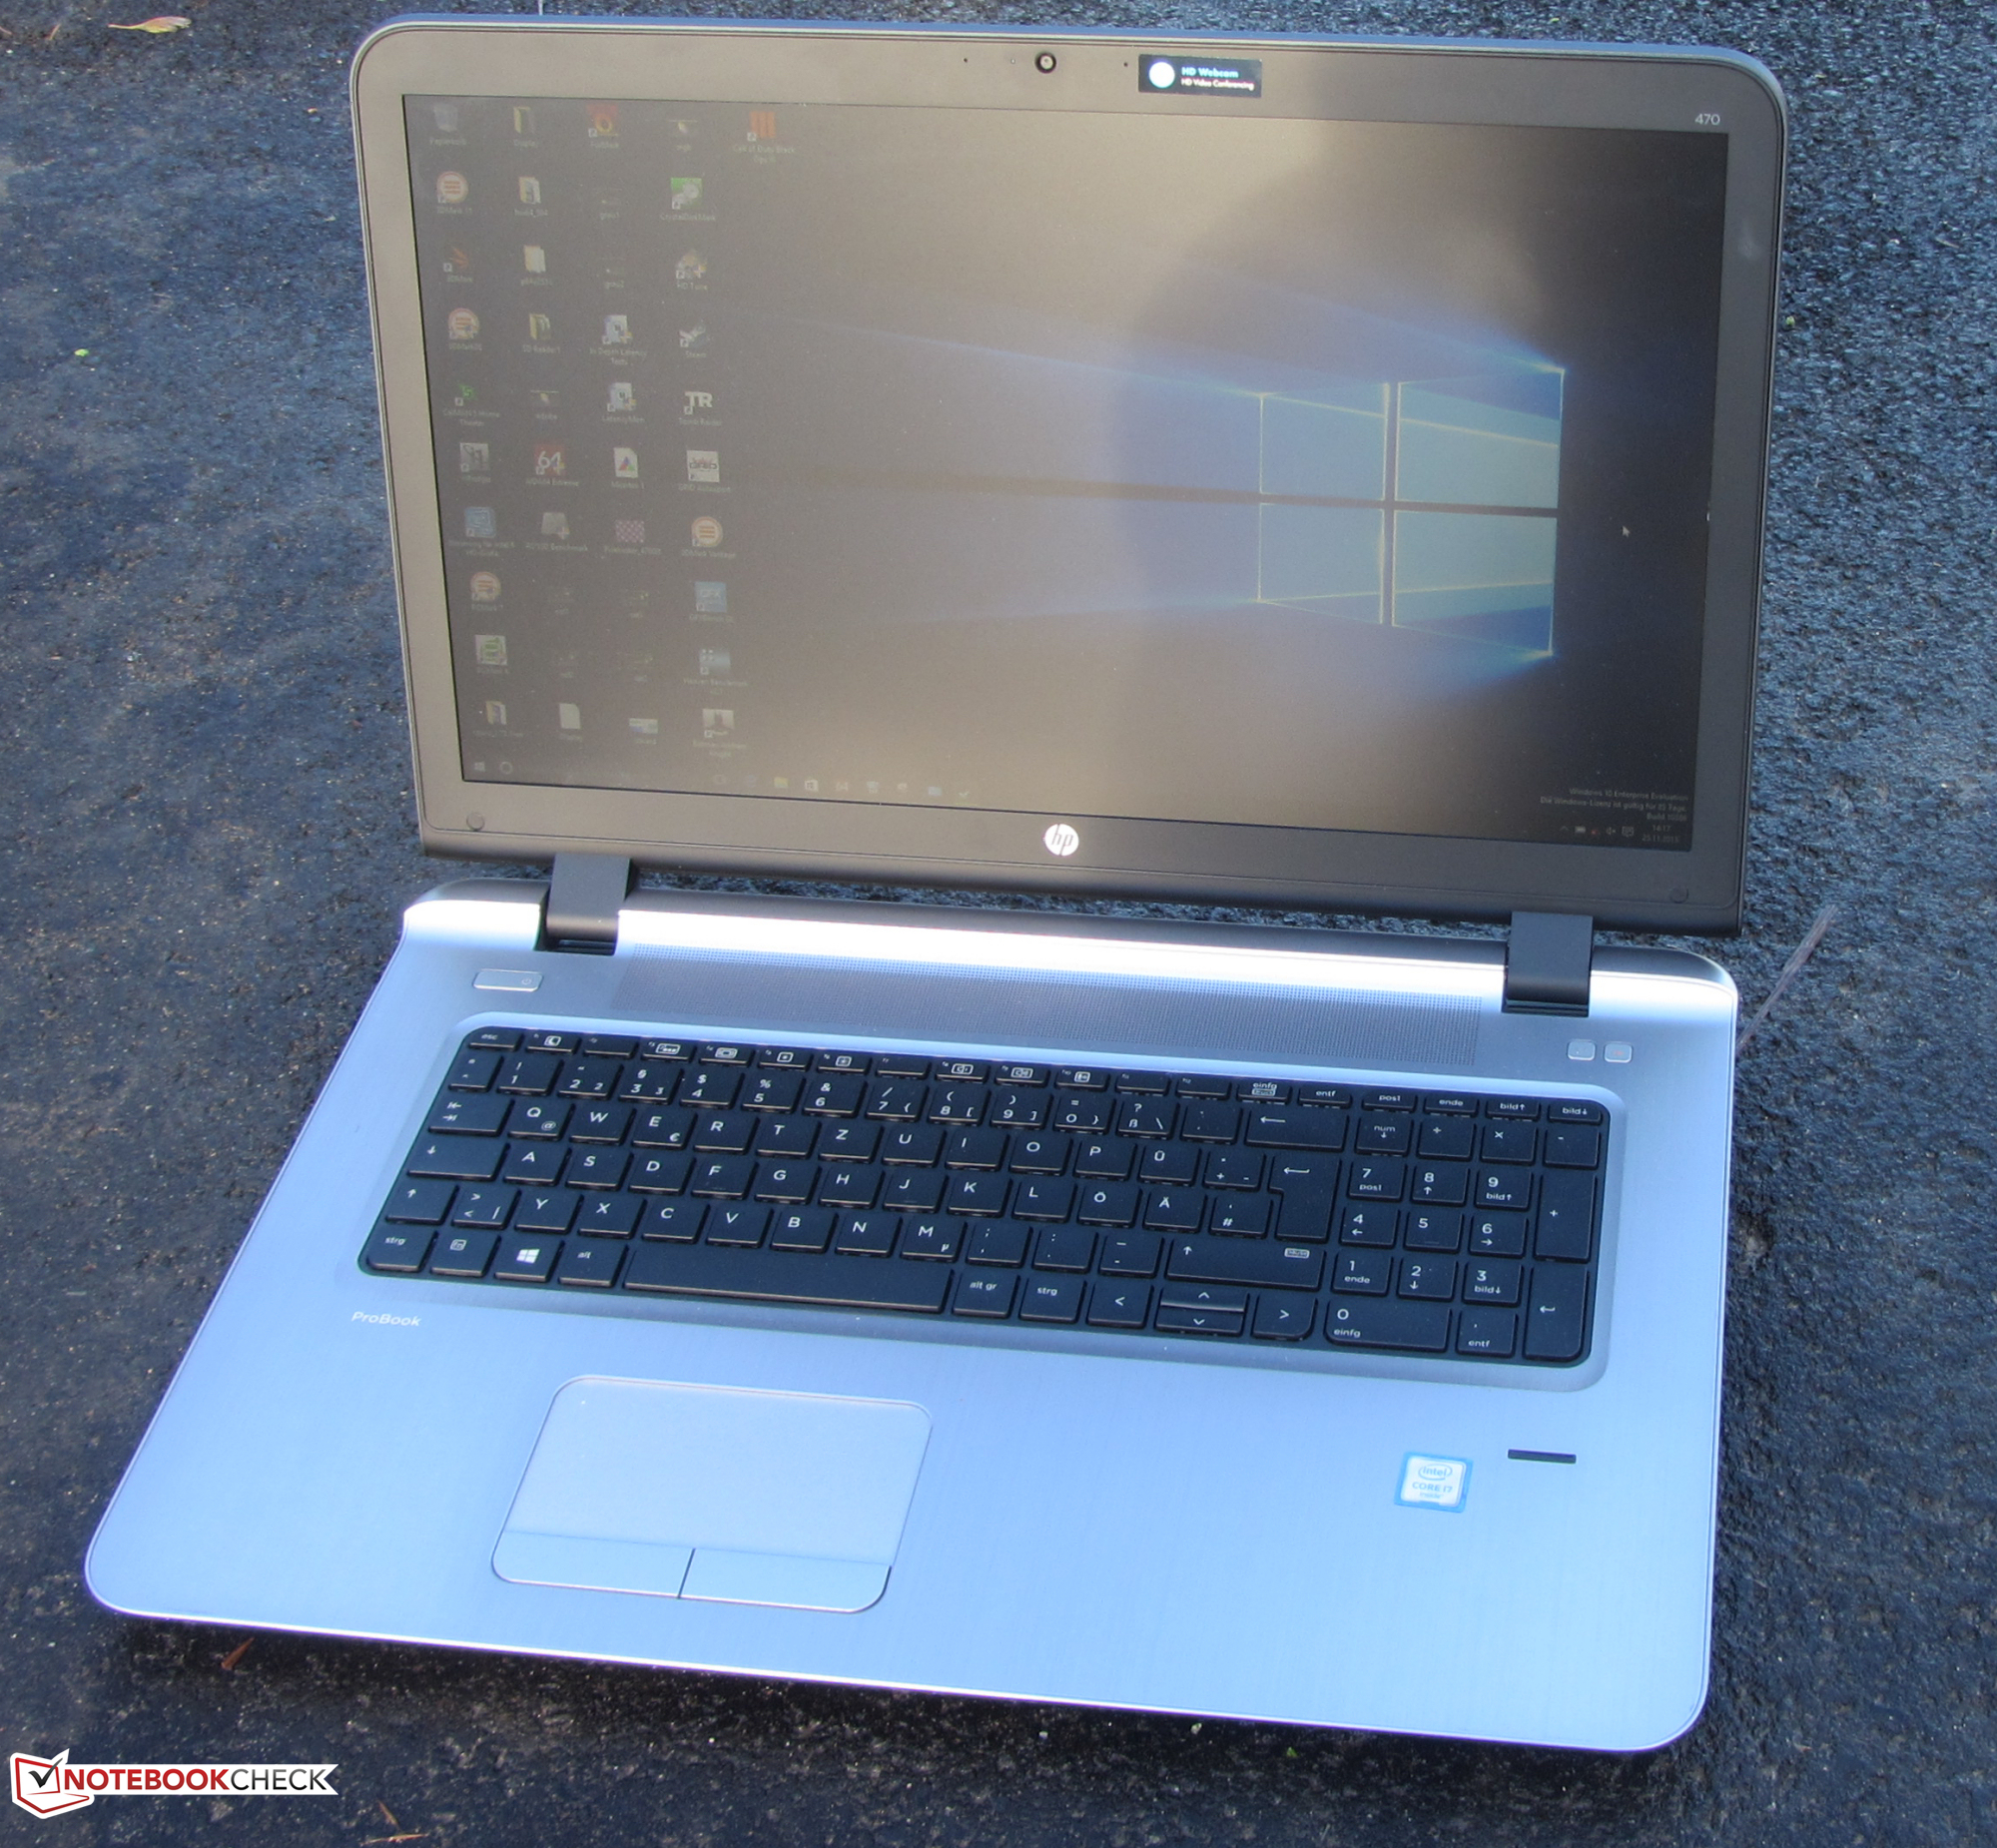 【大画面17.3インチノート】 【スタイリッシュノート】 HP ProBook 470 G3 Notebook PC 第6世代 Core i7 6500U 8GB 新品HDD2TB スーパーマルチ Windows10 64bit WPSOffice 17.3インチ フルHD カメラ 無線LAN パソコン ノートパソコン PC Notebook